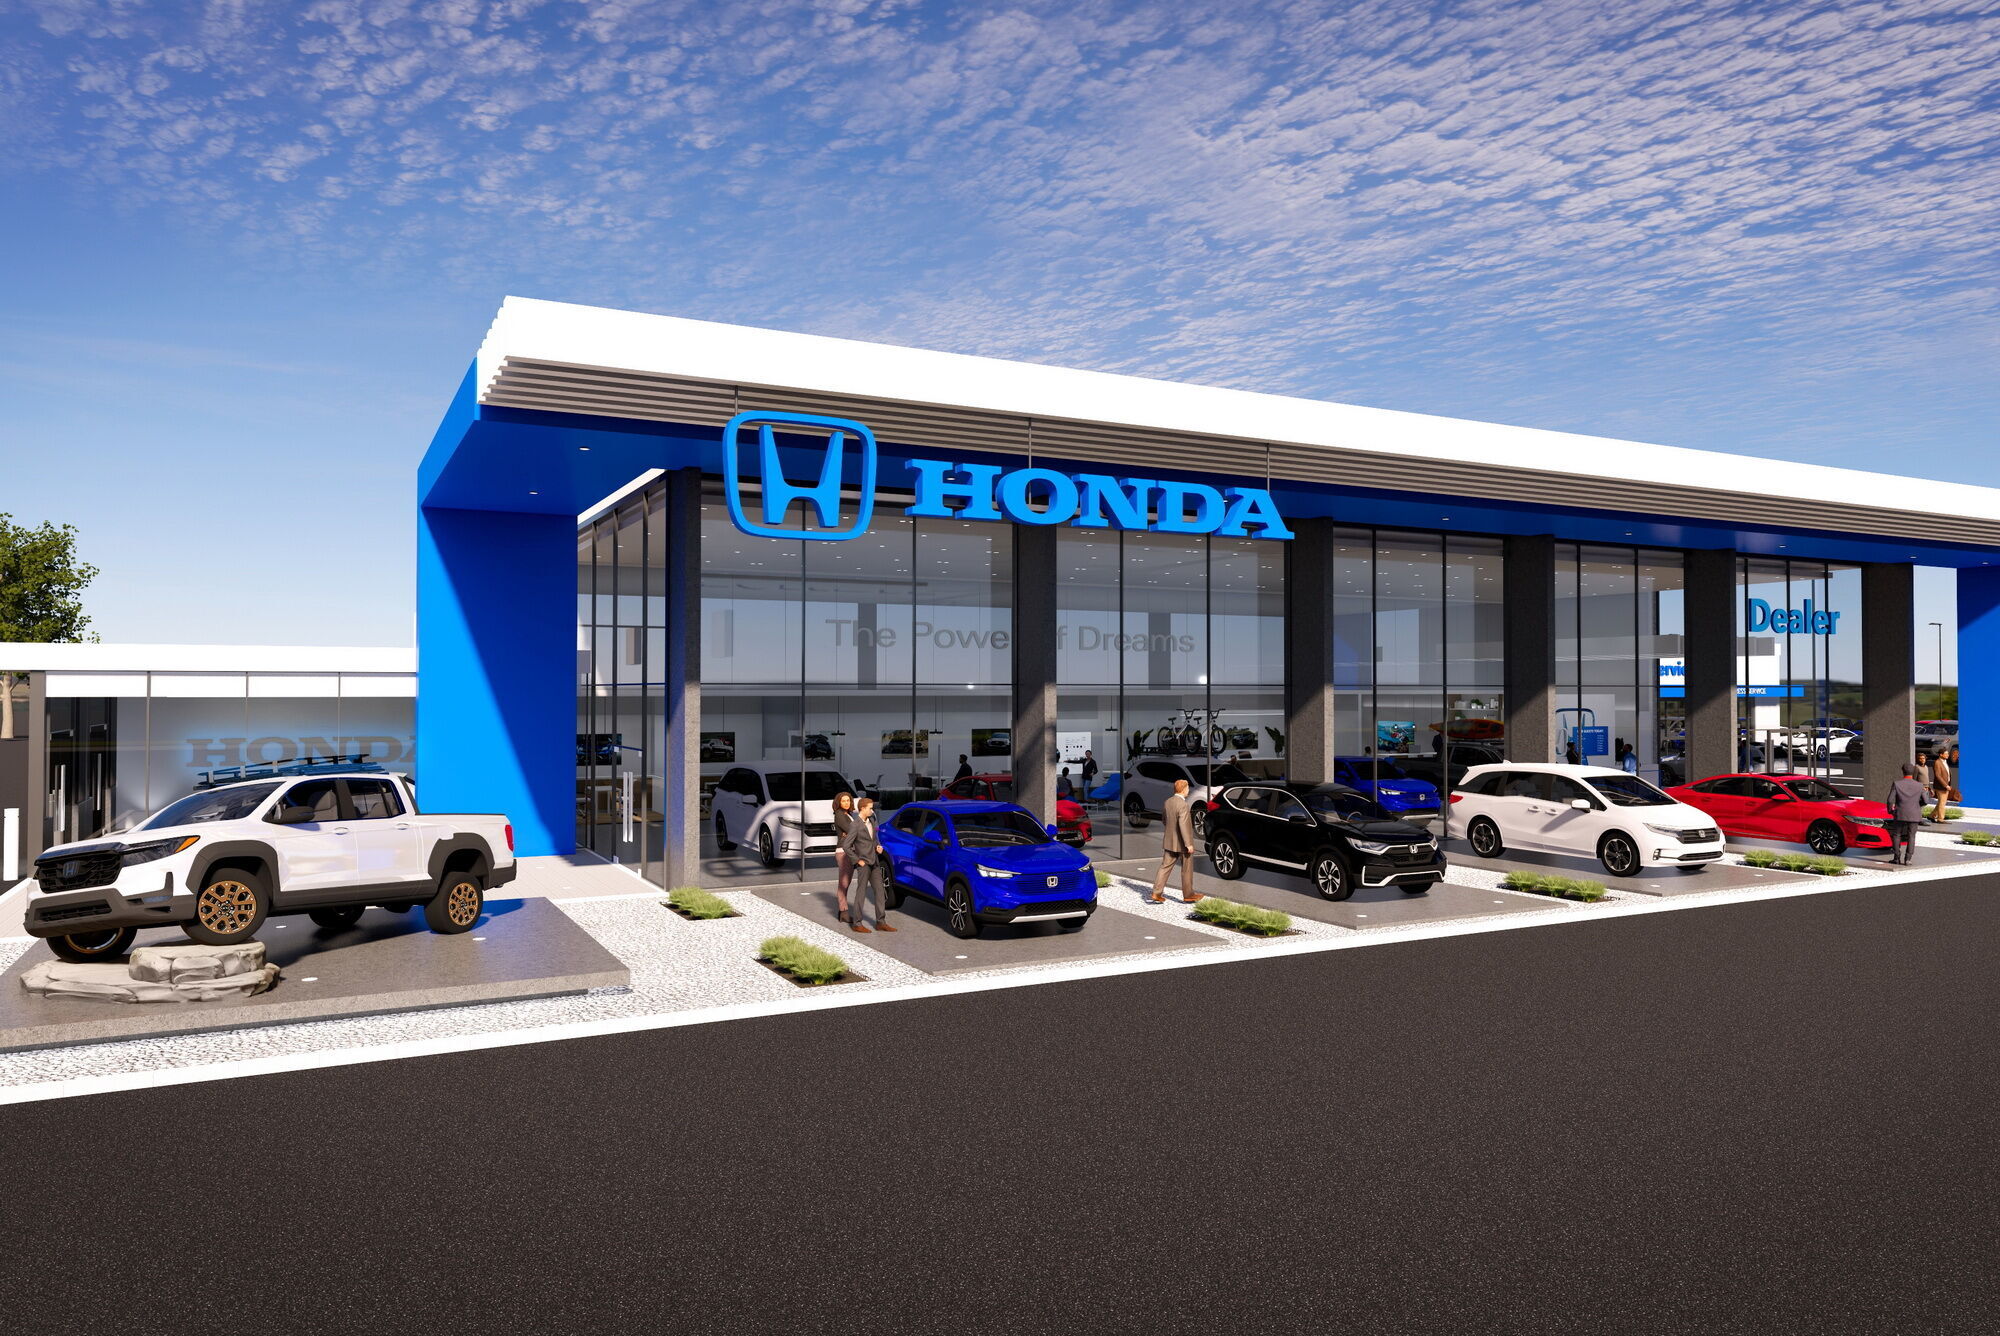 Помимо тизера Honda Prologue компания представила новую концепцию дизайна дилерских центров